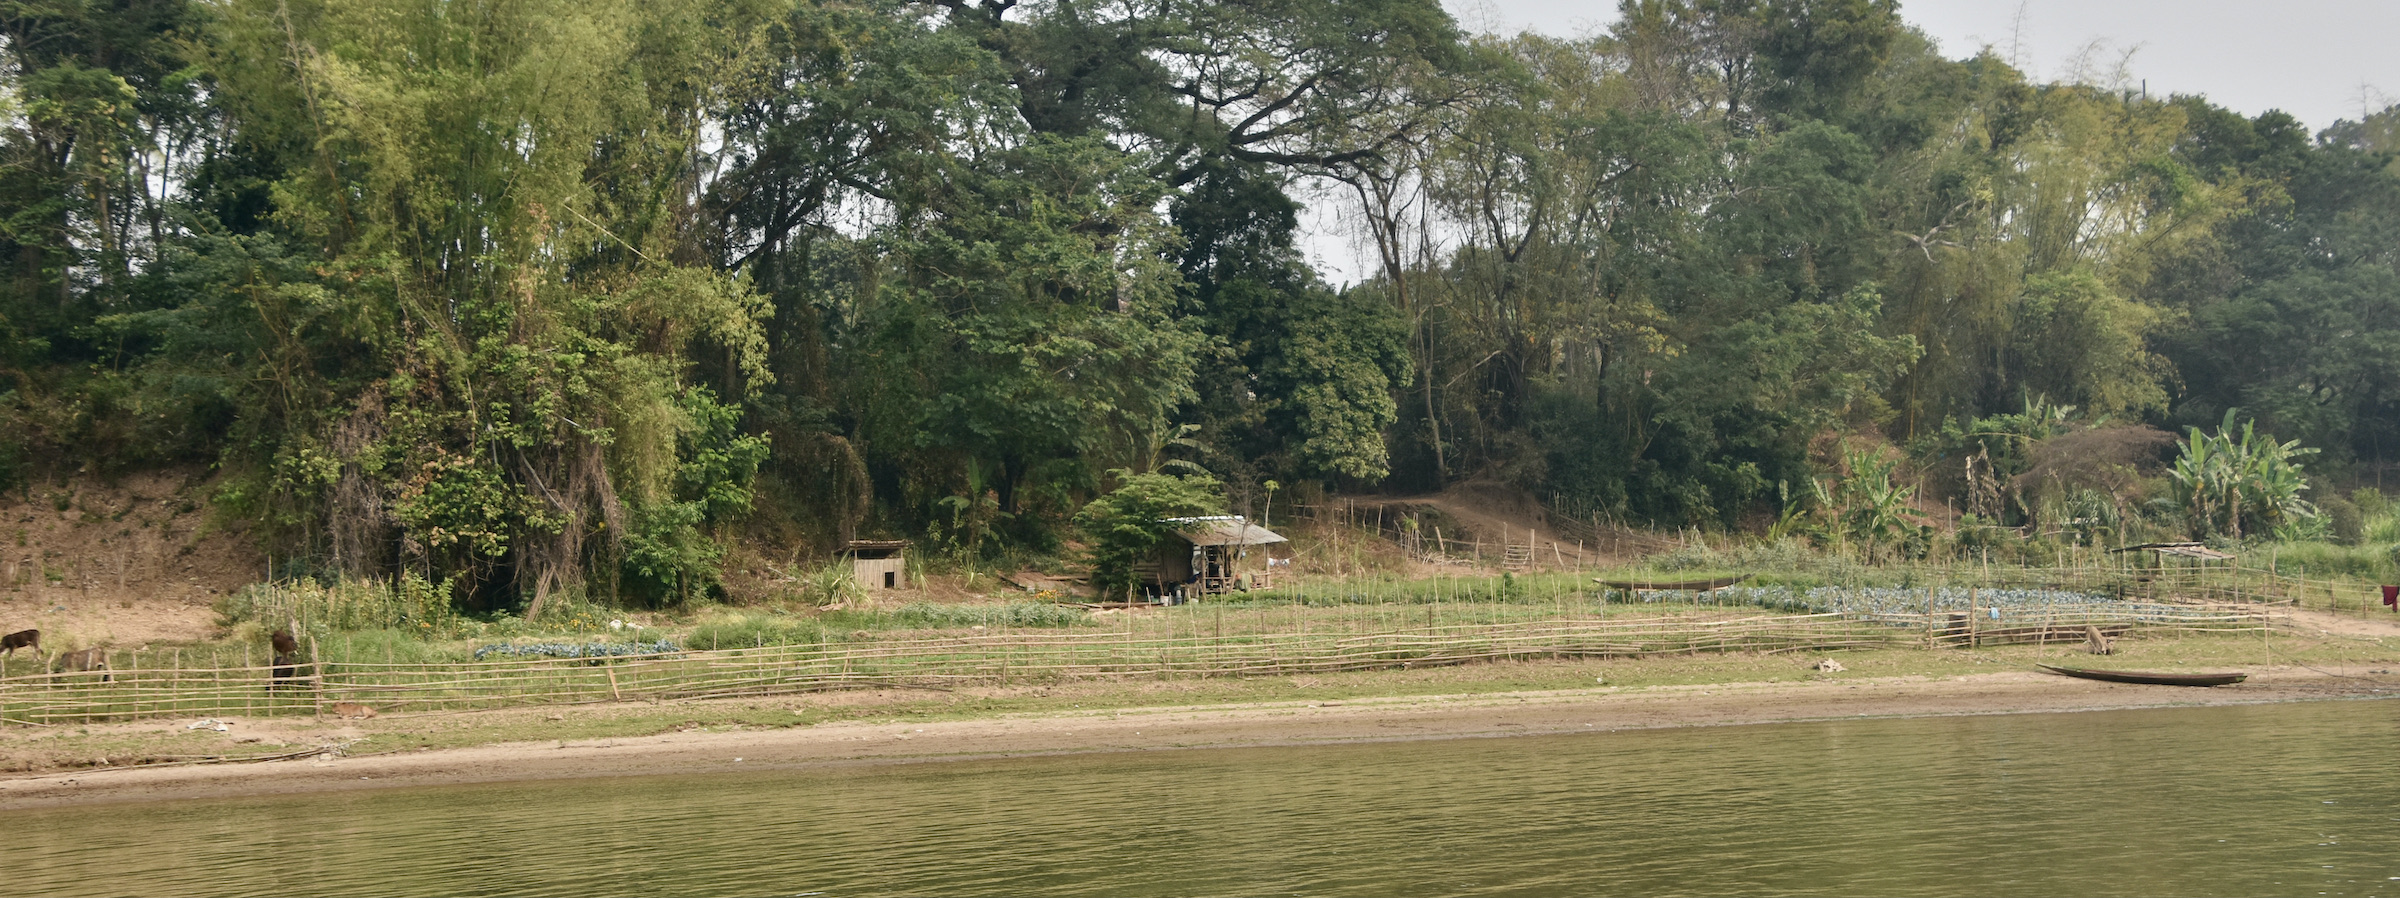 Seasonal Gardens on the Mekong River